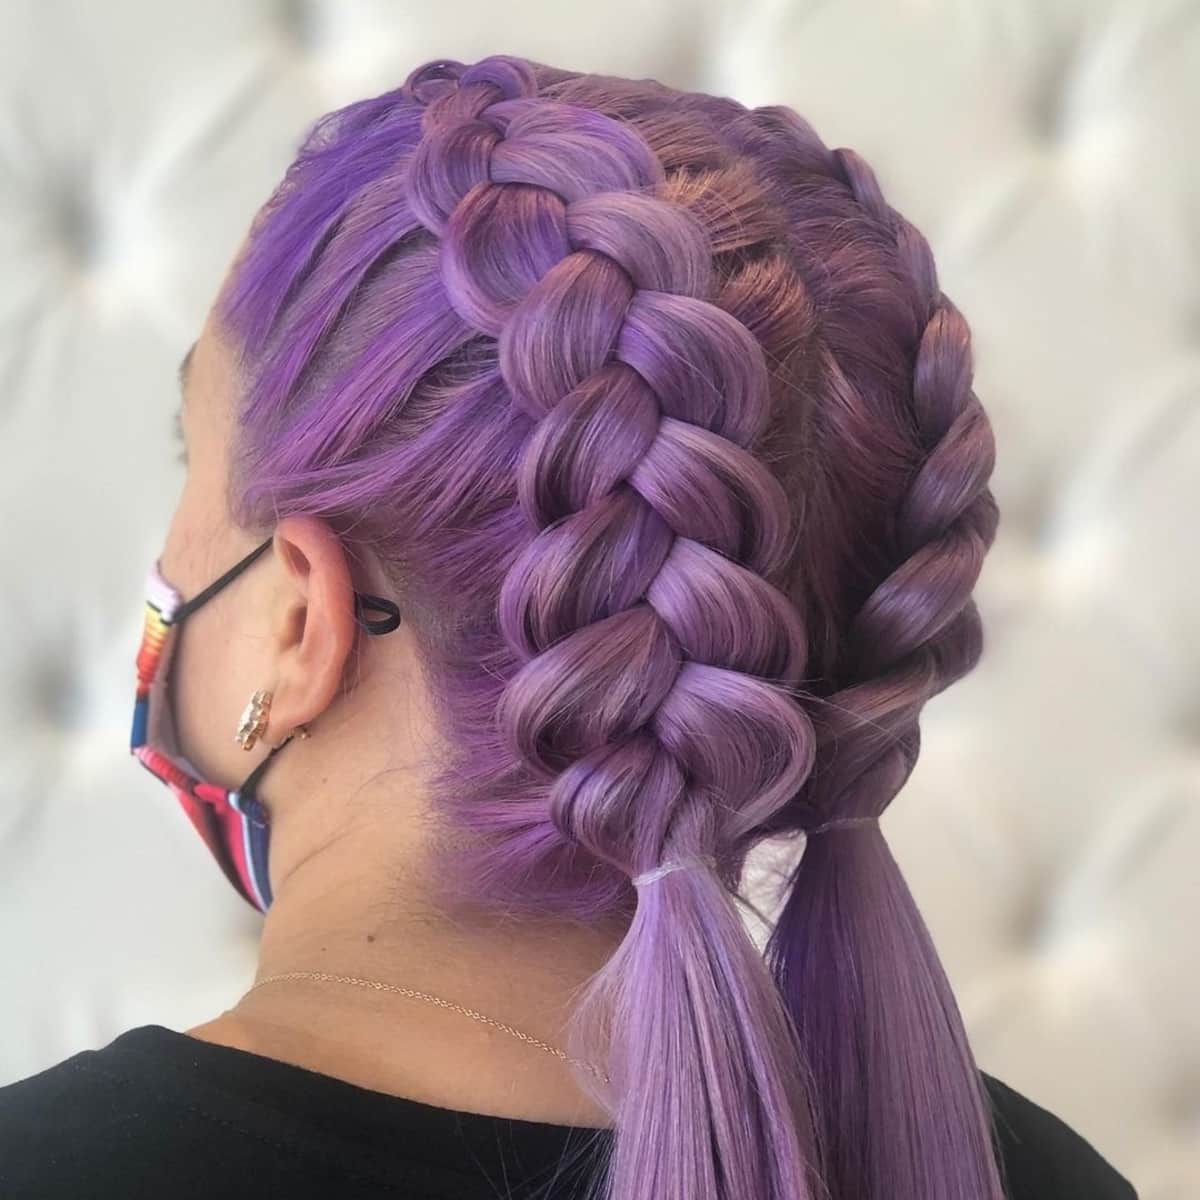 Double-dutch lavender braids